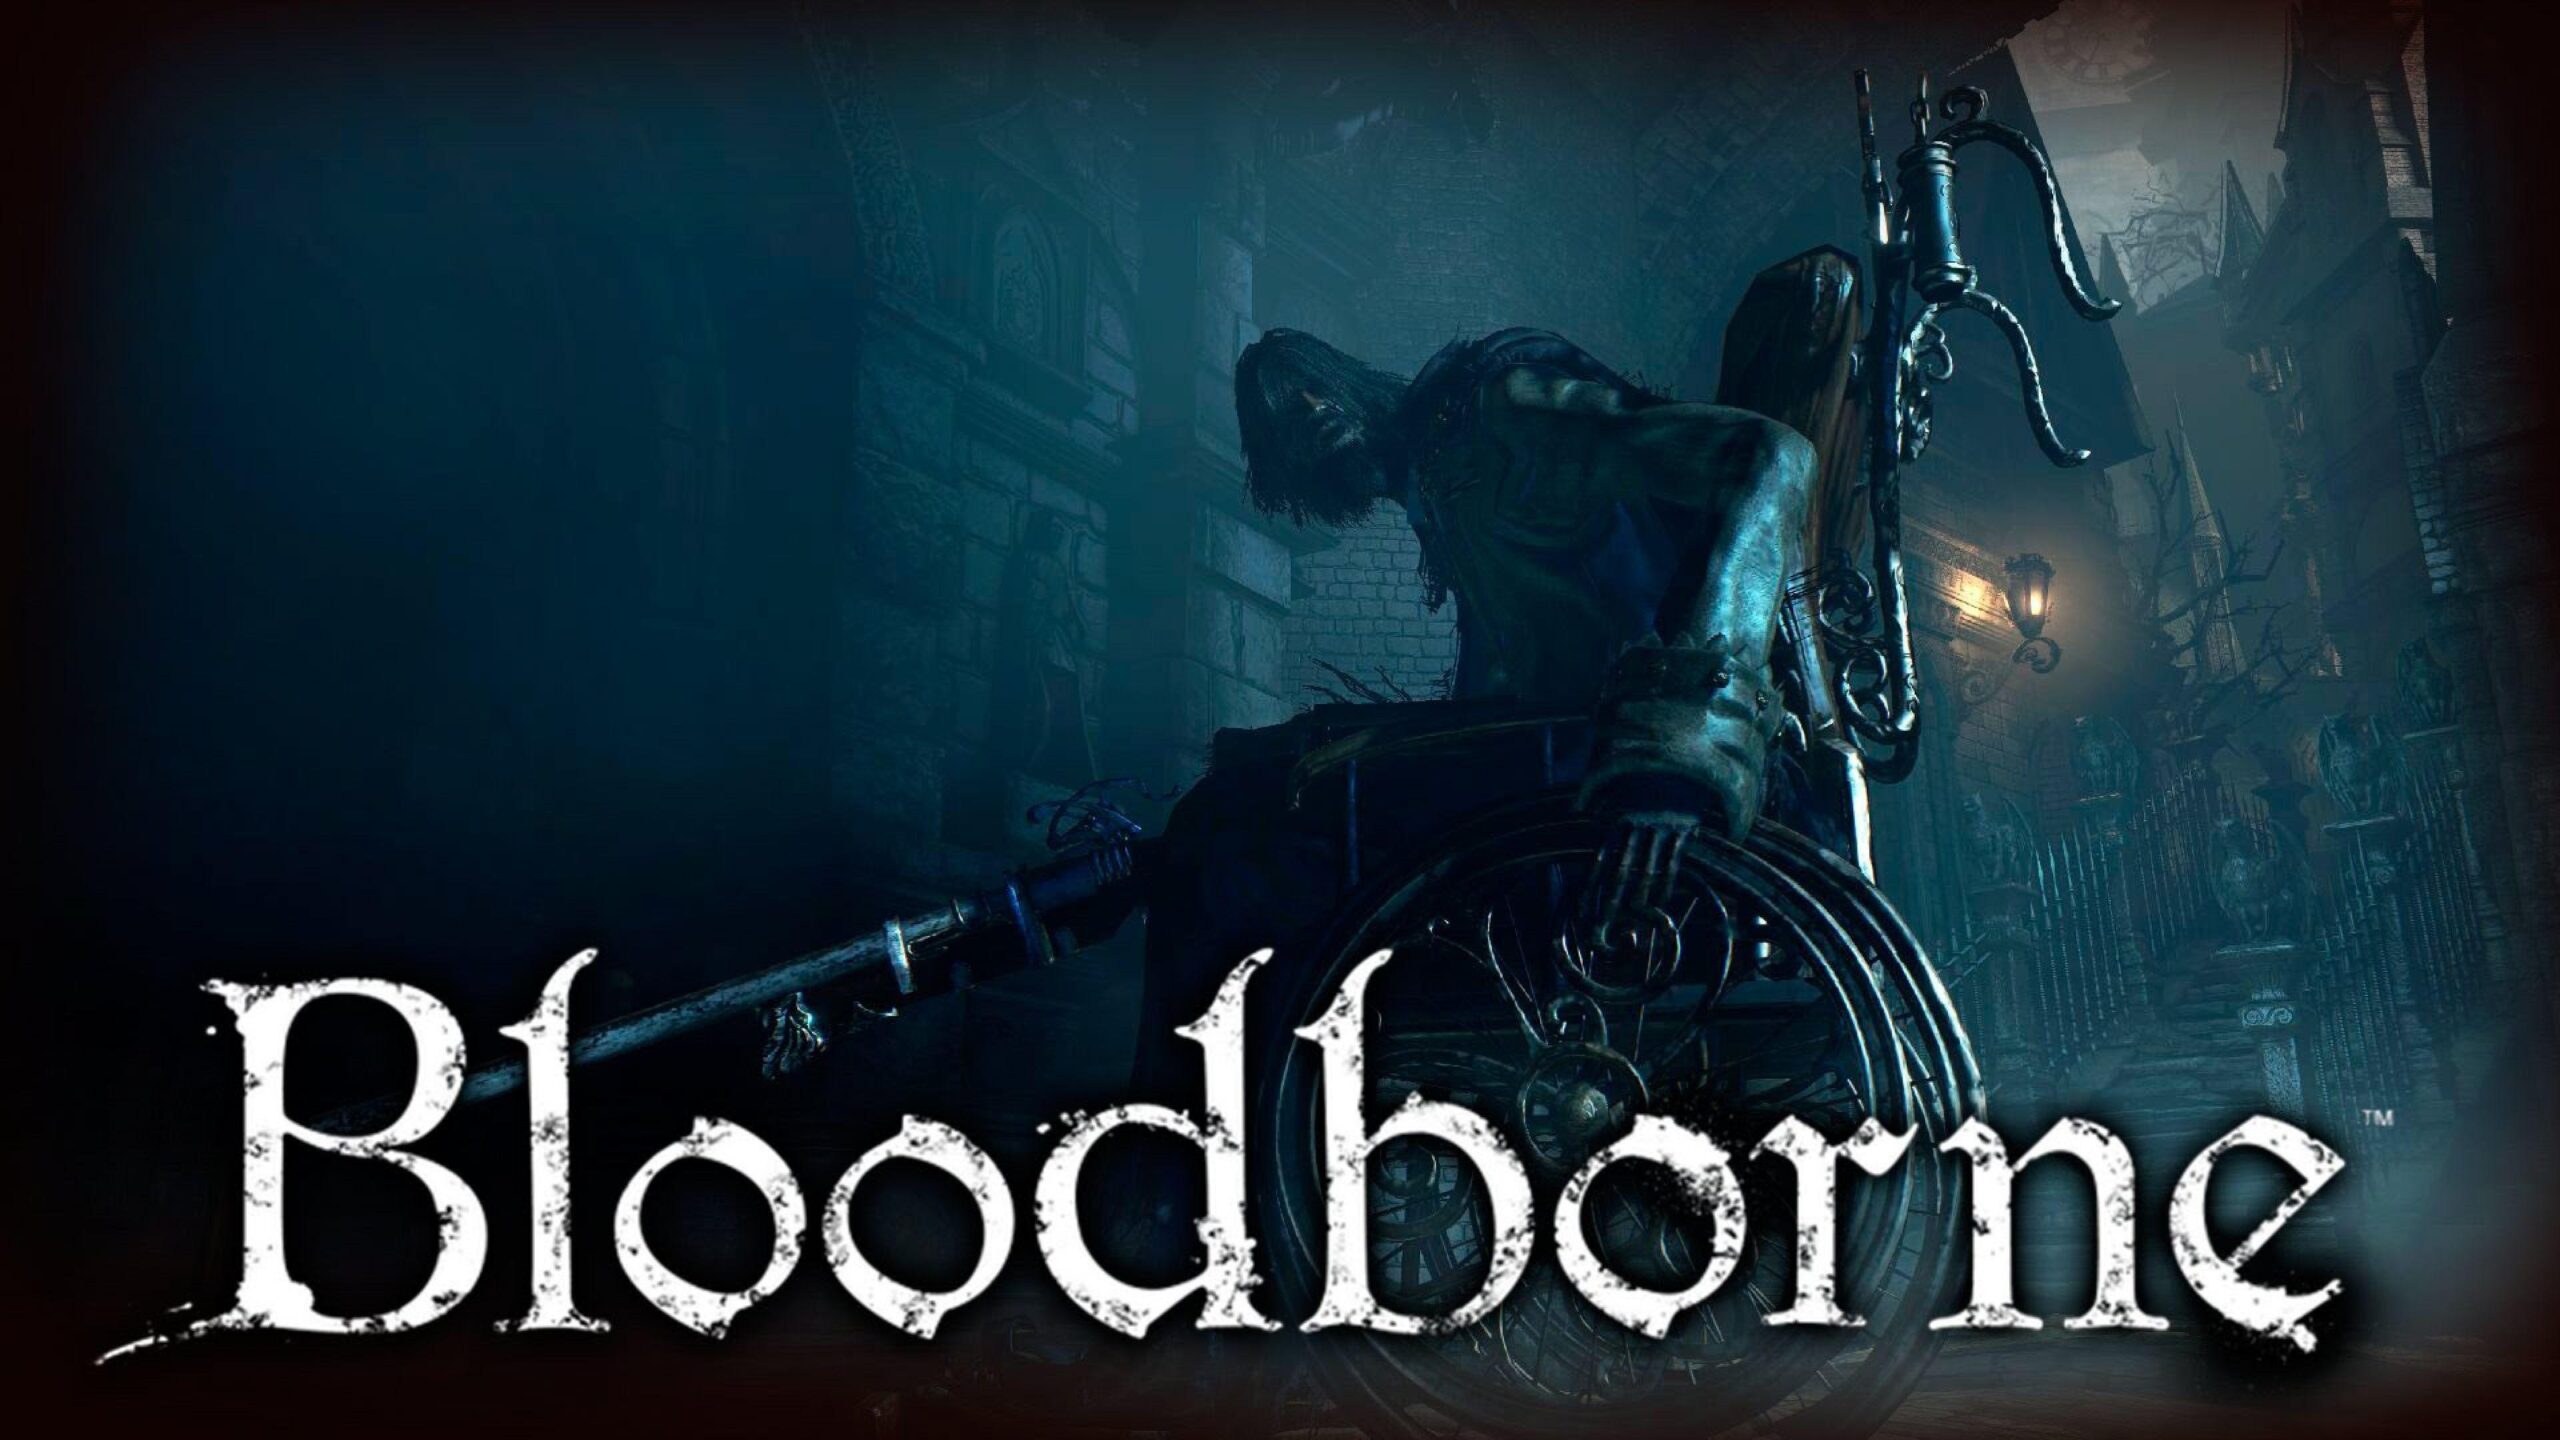 Bloodborne New Wallpaper, Bloodborne, Game